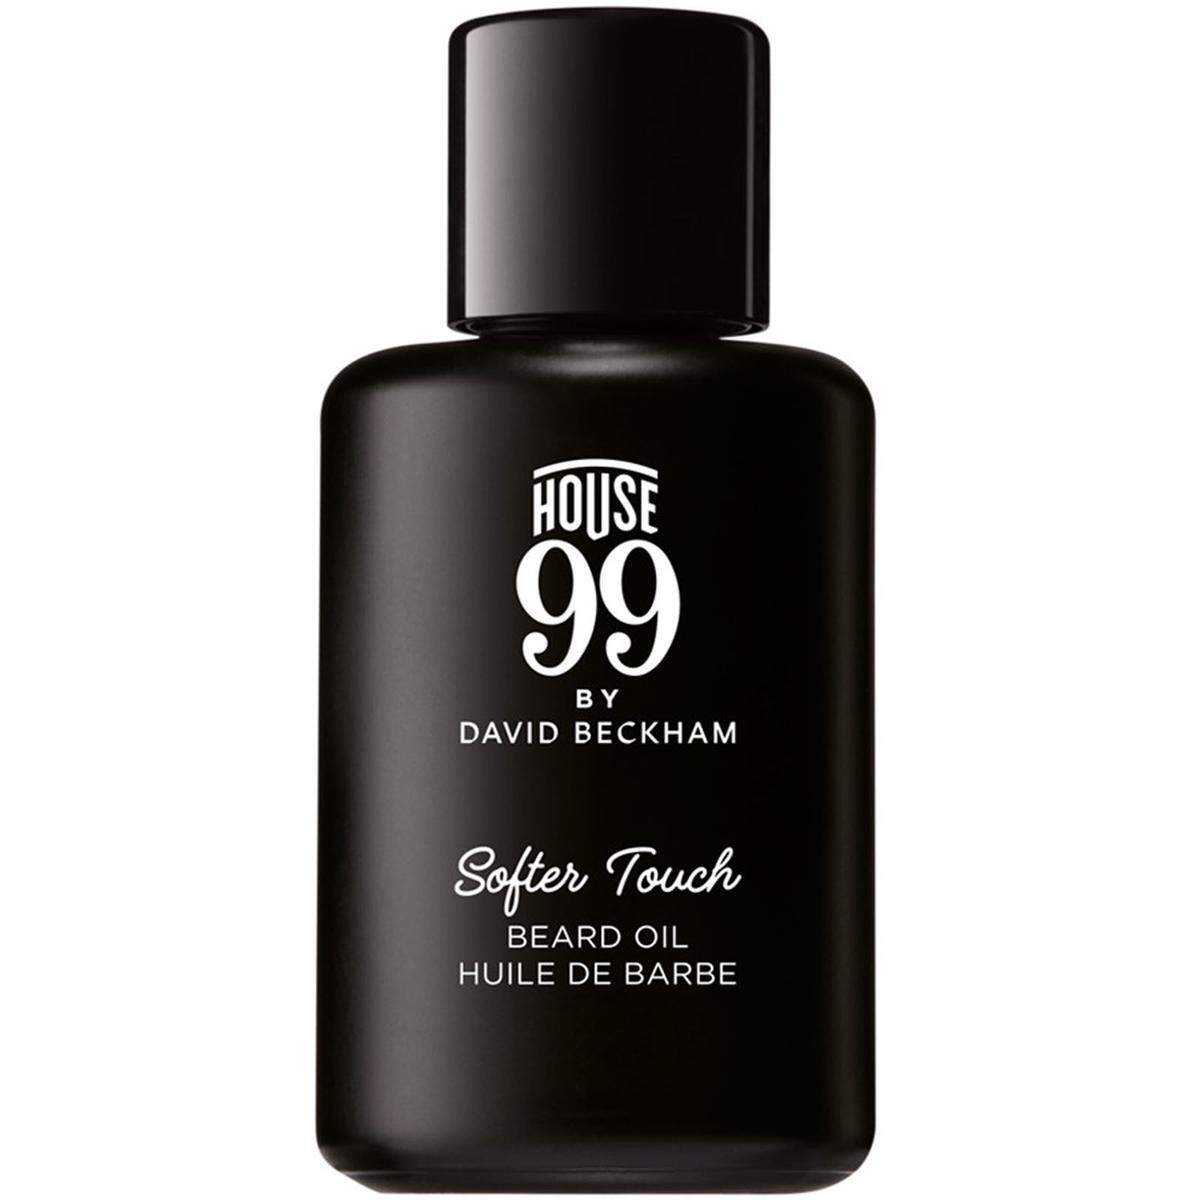 David Beckham hat mit House 99 ein eigenes Grooming-Label gegründet. Dabei darf Bartöl nicht fehlen. Öl "Soft Touch", 30 ml um 25 Euro.